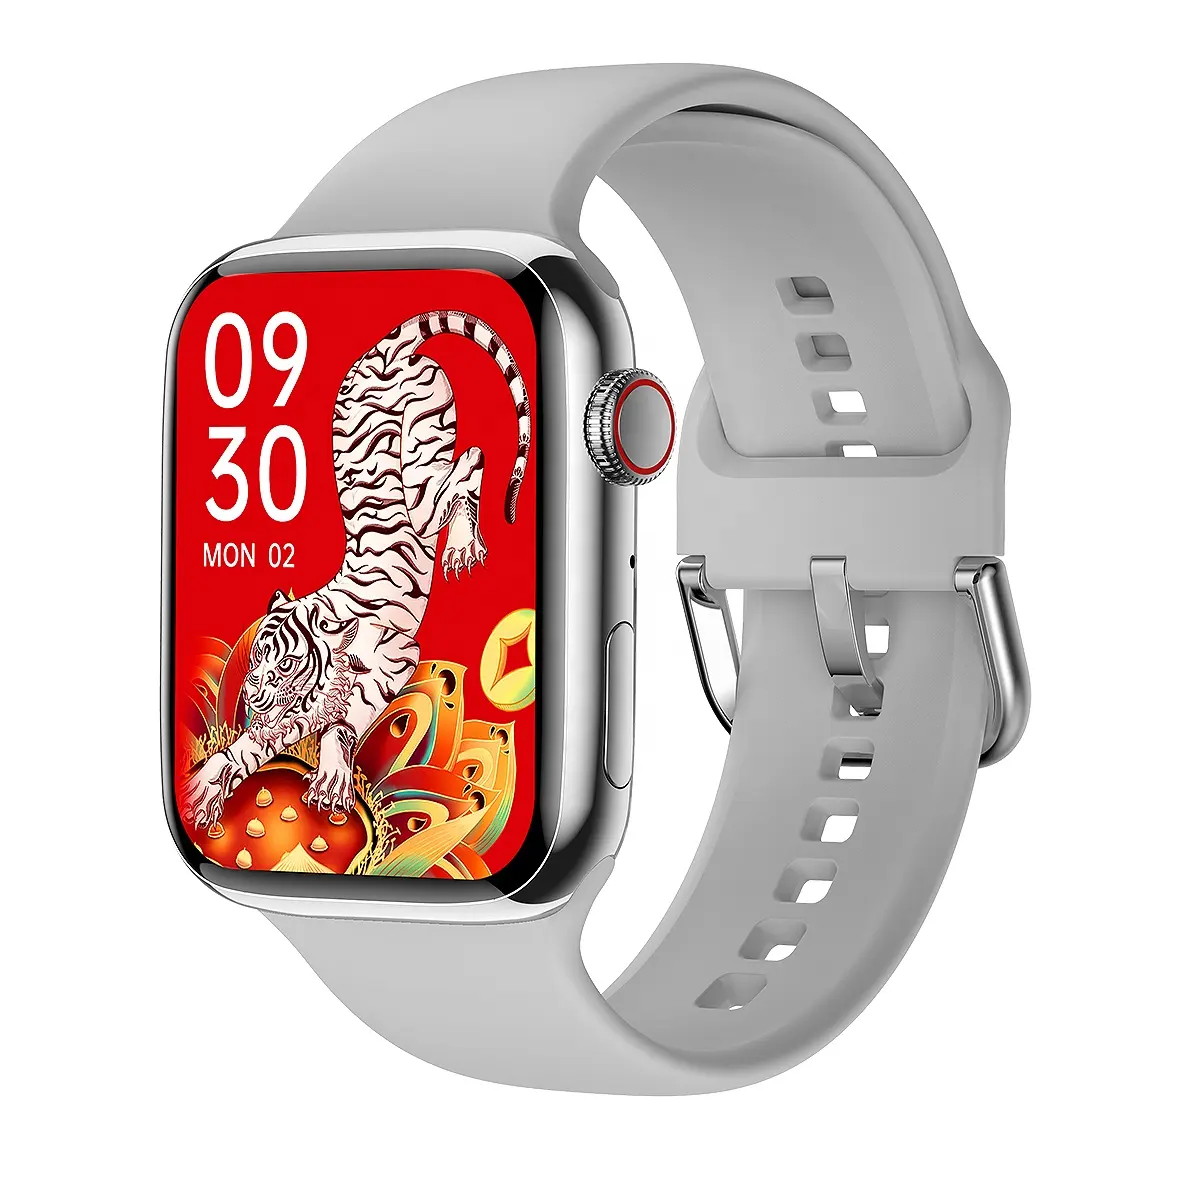 뜨거운 판매 Smartwatch 온라인 지불 카드 액세스 제어 수면 감지 PD7 최대 스마트 시계